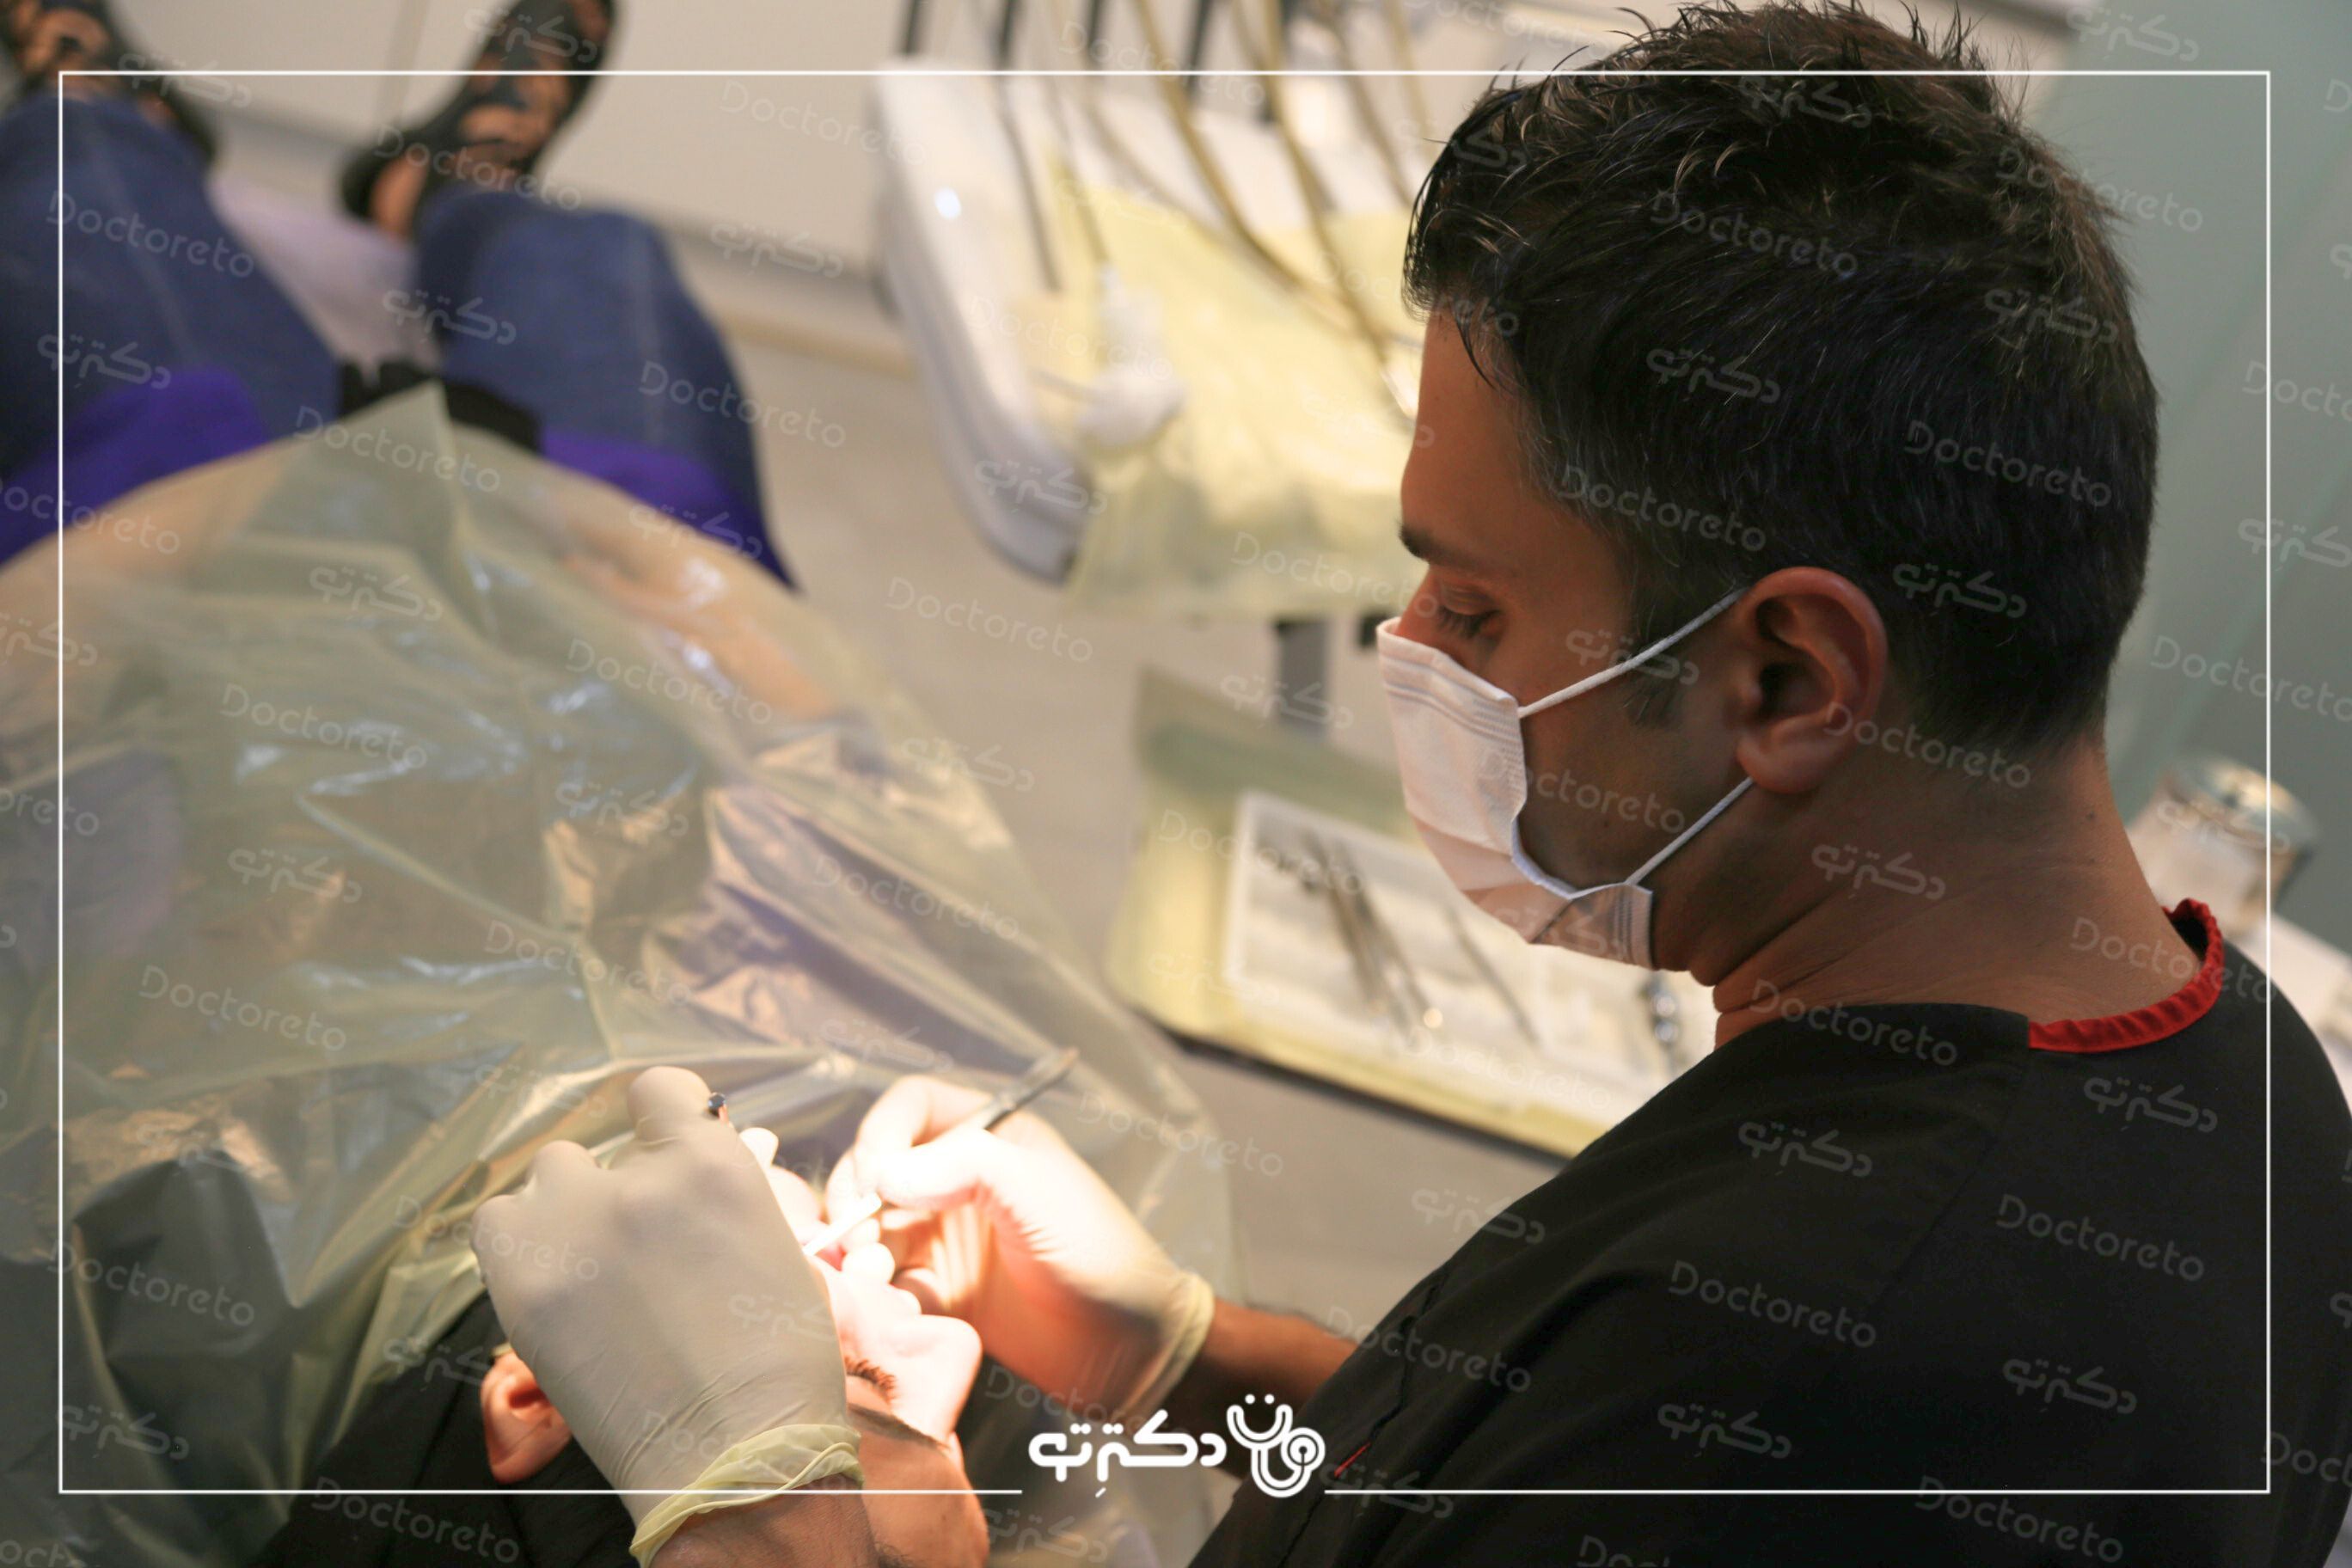 بیلد آپ (بازسازی) دندان با کامپوزیت کره ای دکتر امیر خلیلیان در اصفهان 8